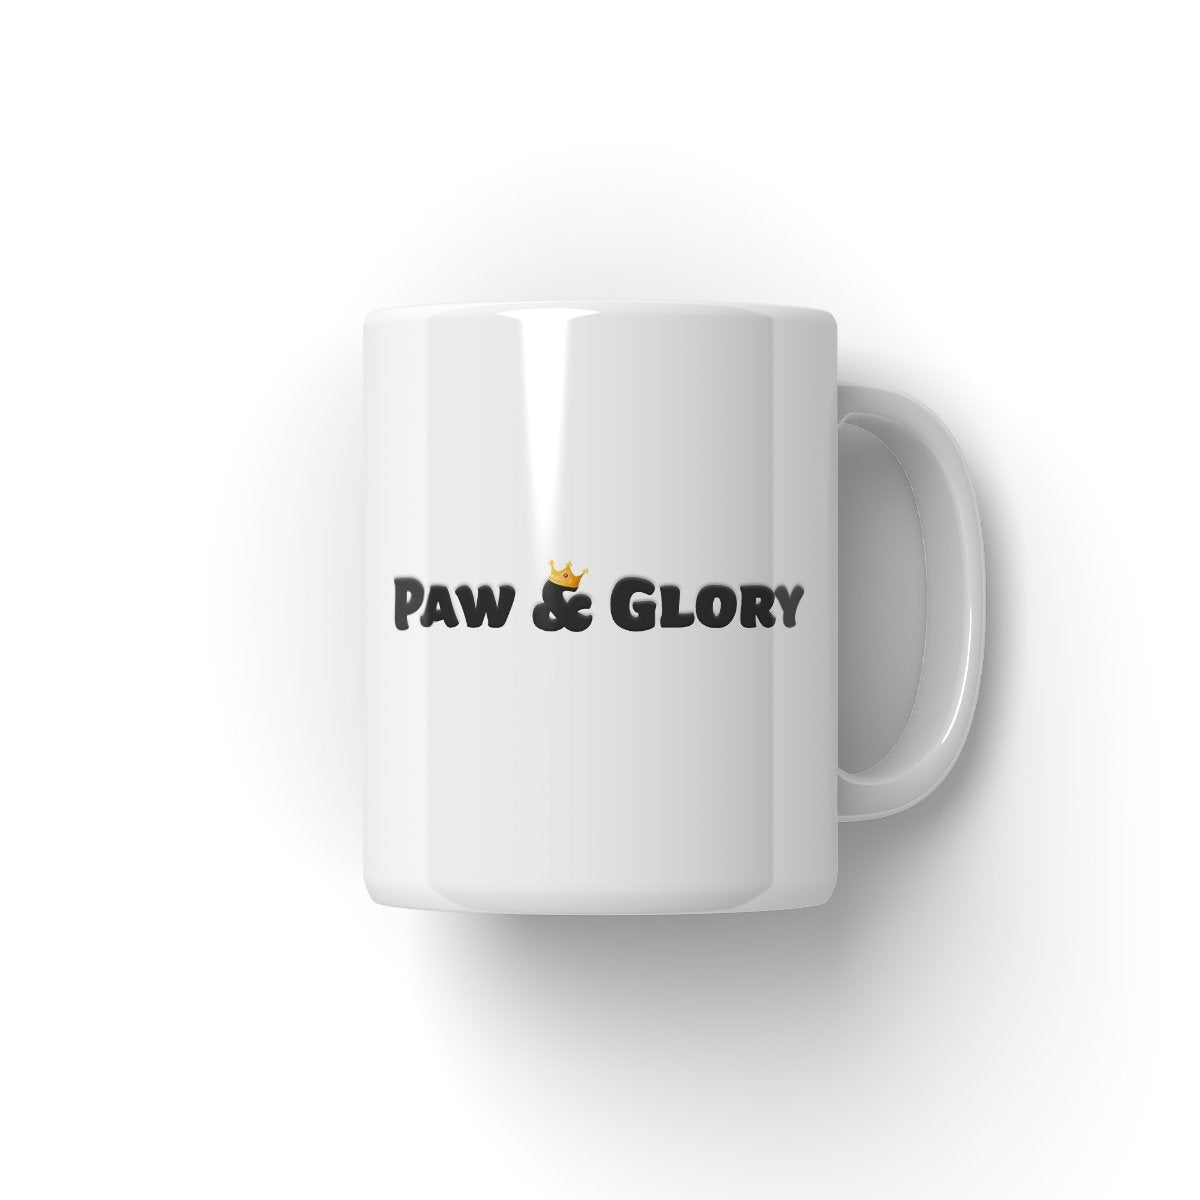 Sunderland Football Club, Paw & Glory, paw and glory, mug dog, personalized dog mugs, custom pet mug, personalised coffee mug with cats, custom dog mug, dog photo mug, Pet Portrait Mug,